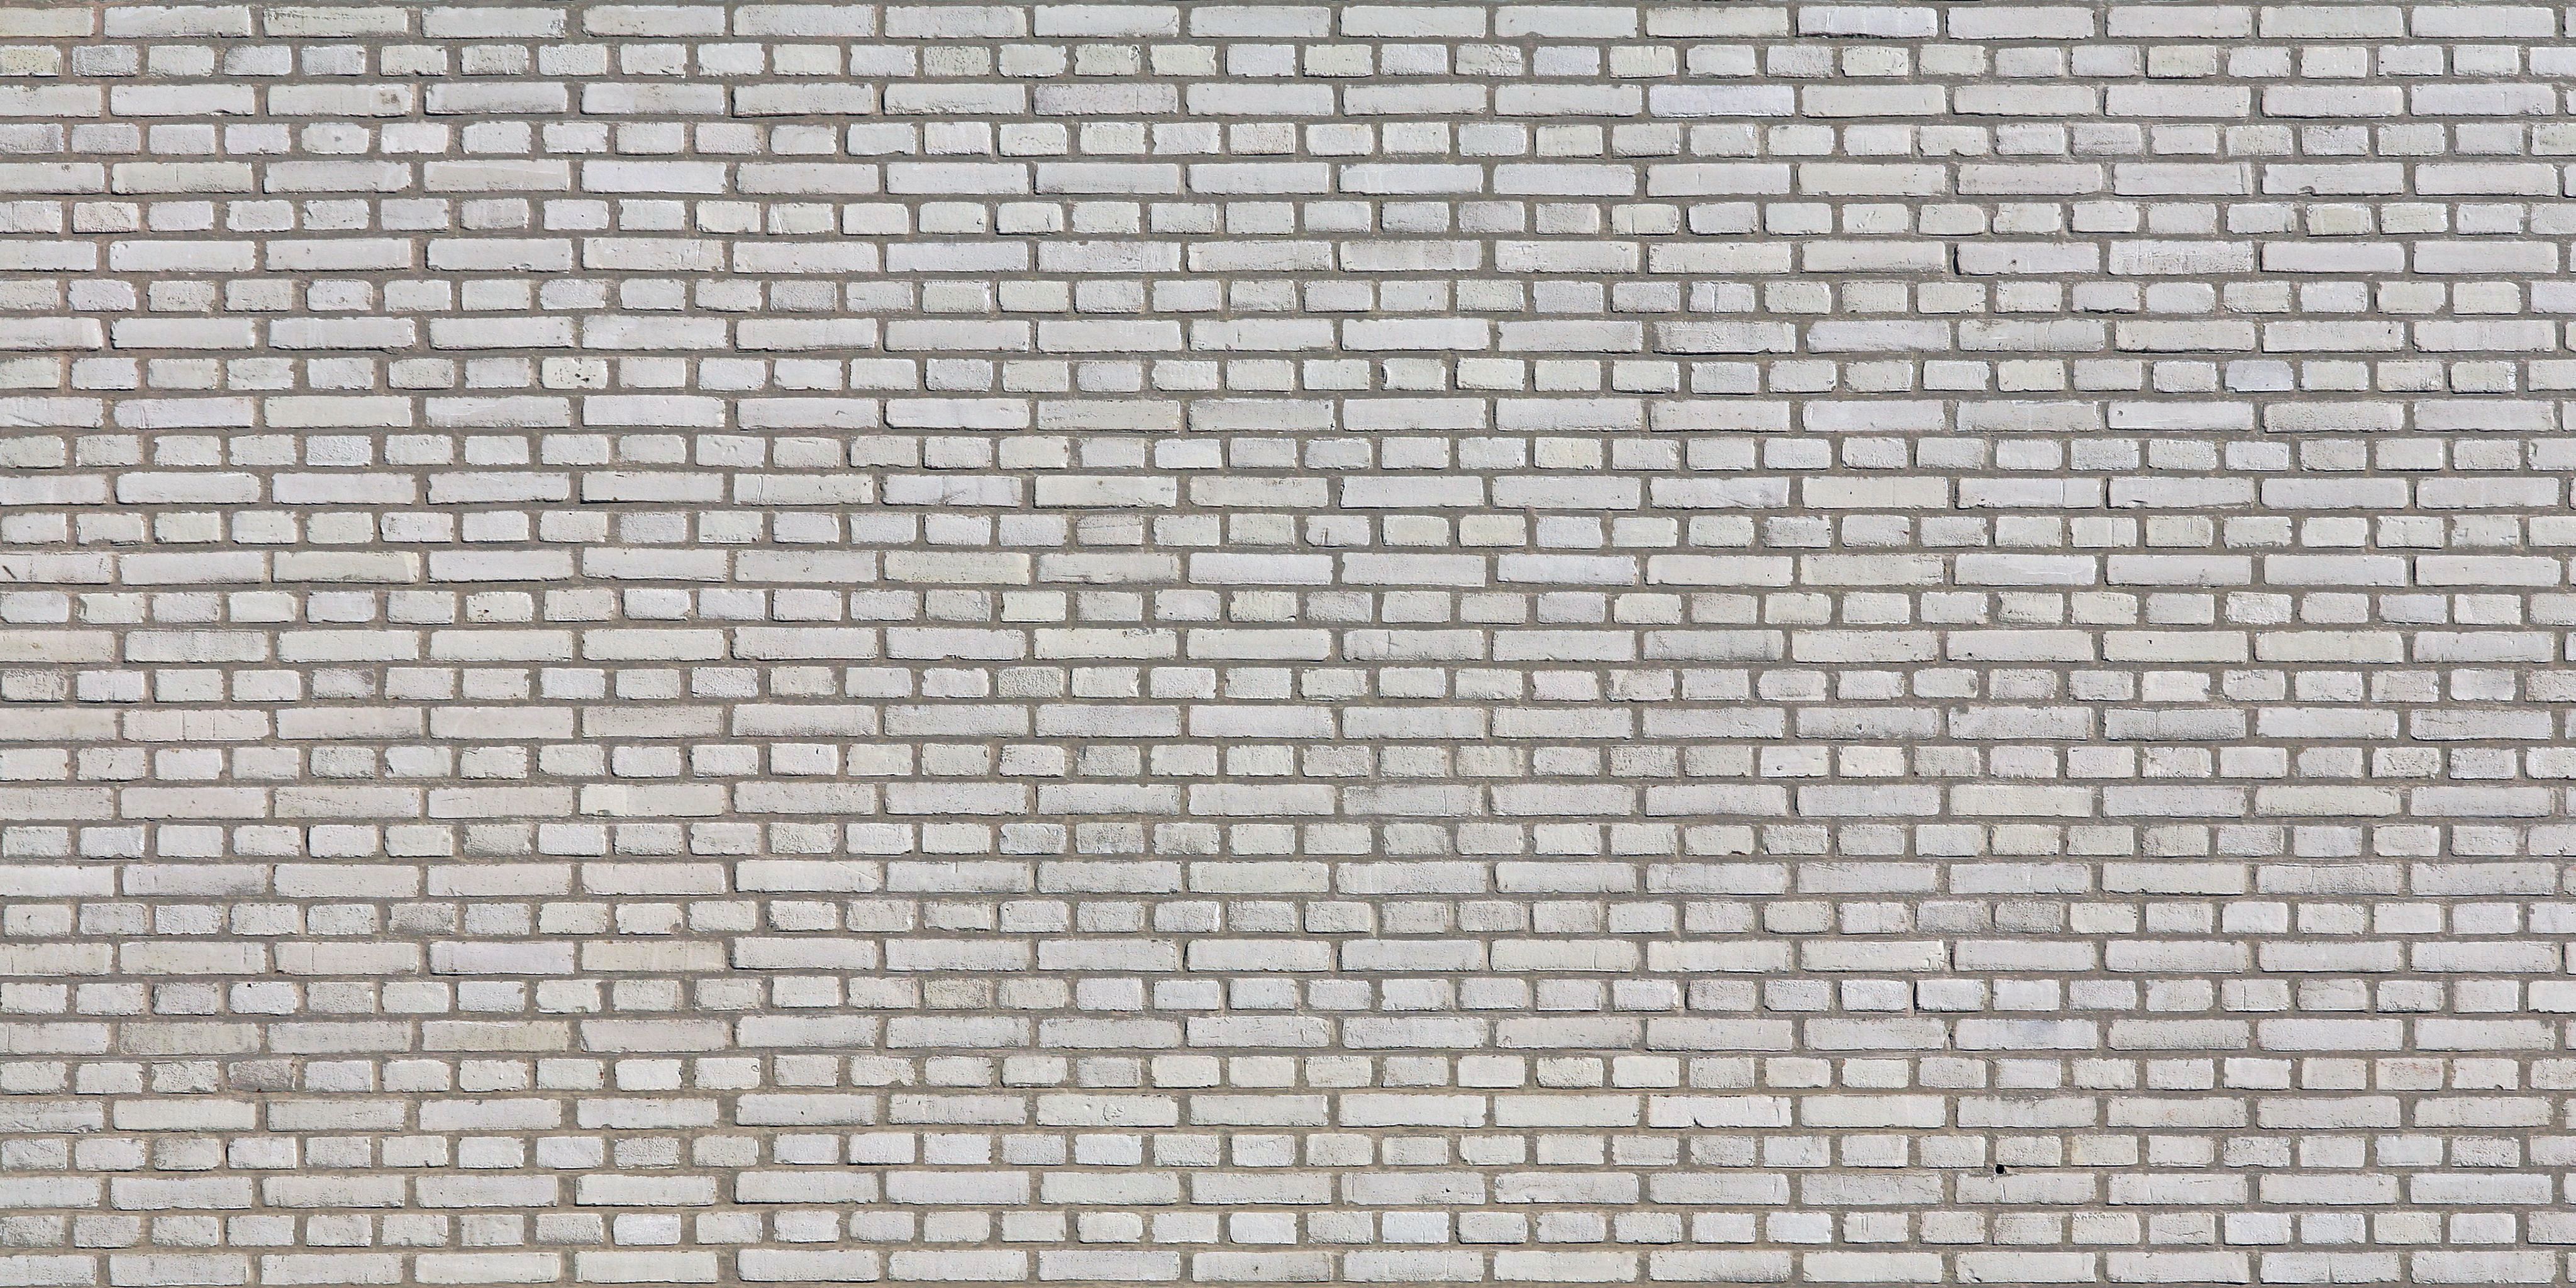 white brick wallpaper,brickwork,wall,brick,pattern,stone wall